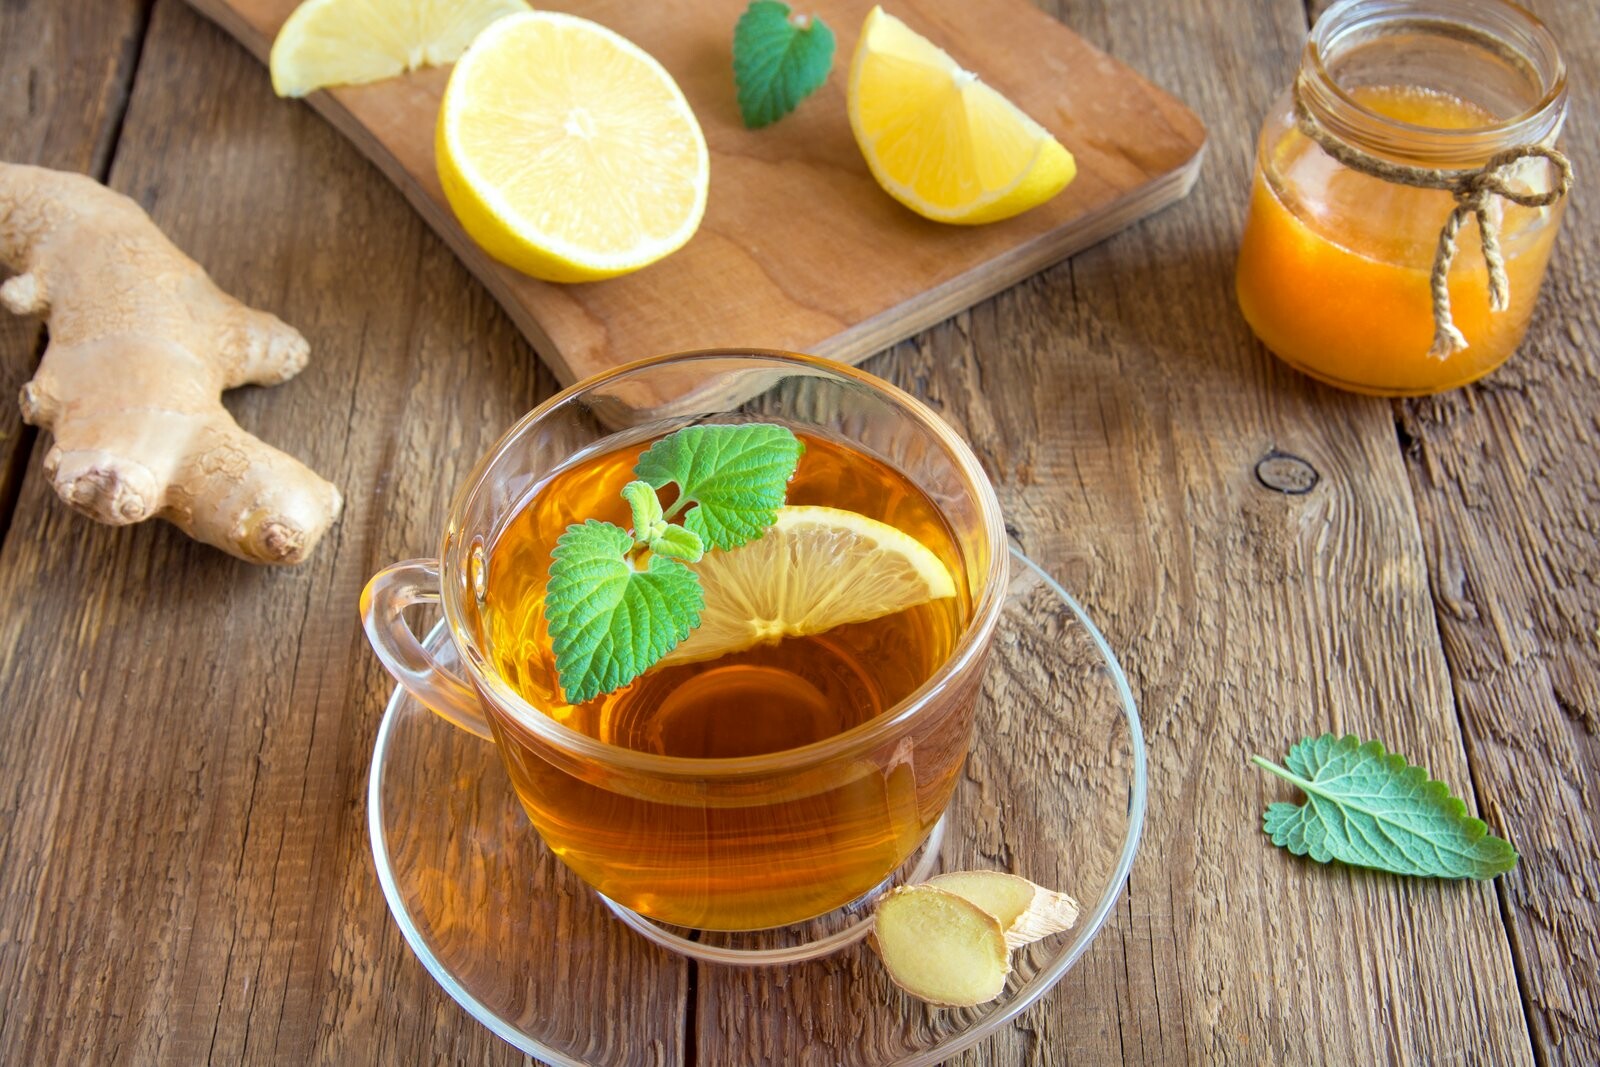 Uống các loại trà không chứa caffeine như trà gừng hoặc trà chanh cũng là một phương pháp bù nước hiệu quả. Nguồn ảnh: Kitchen.com